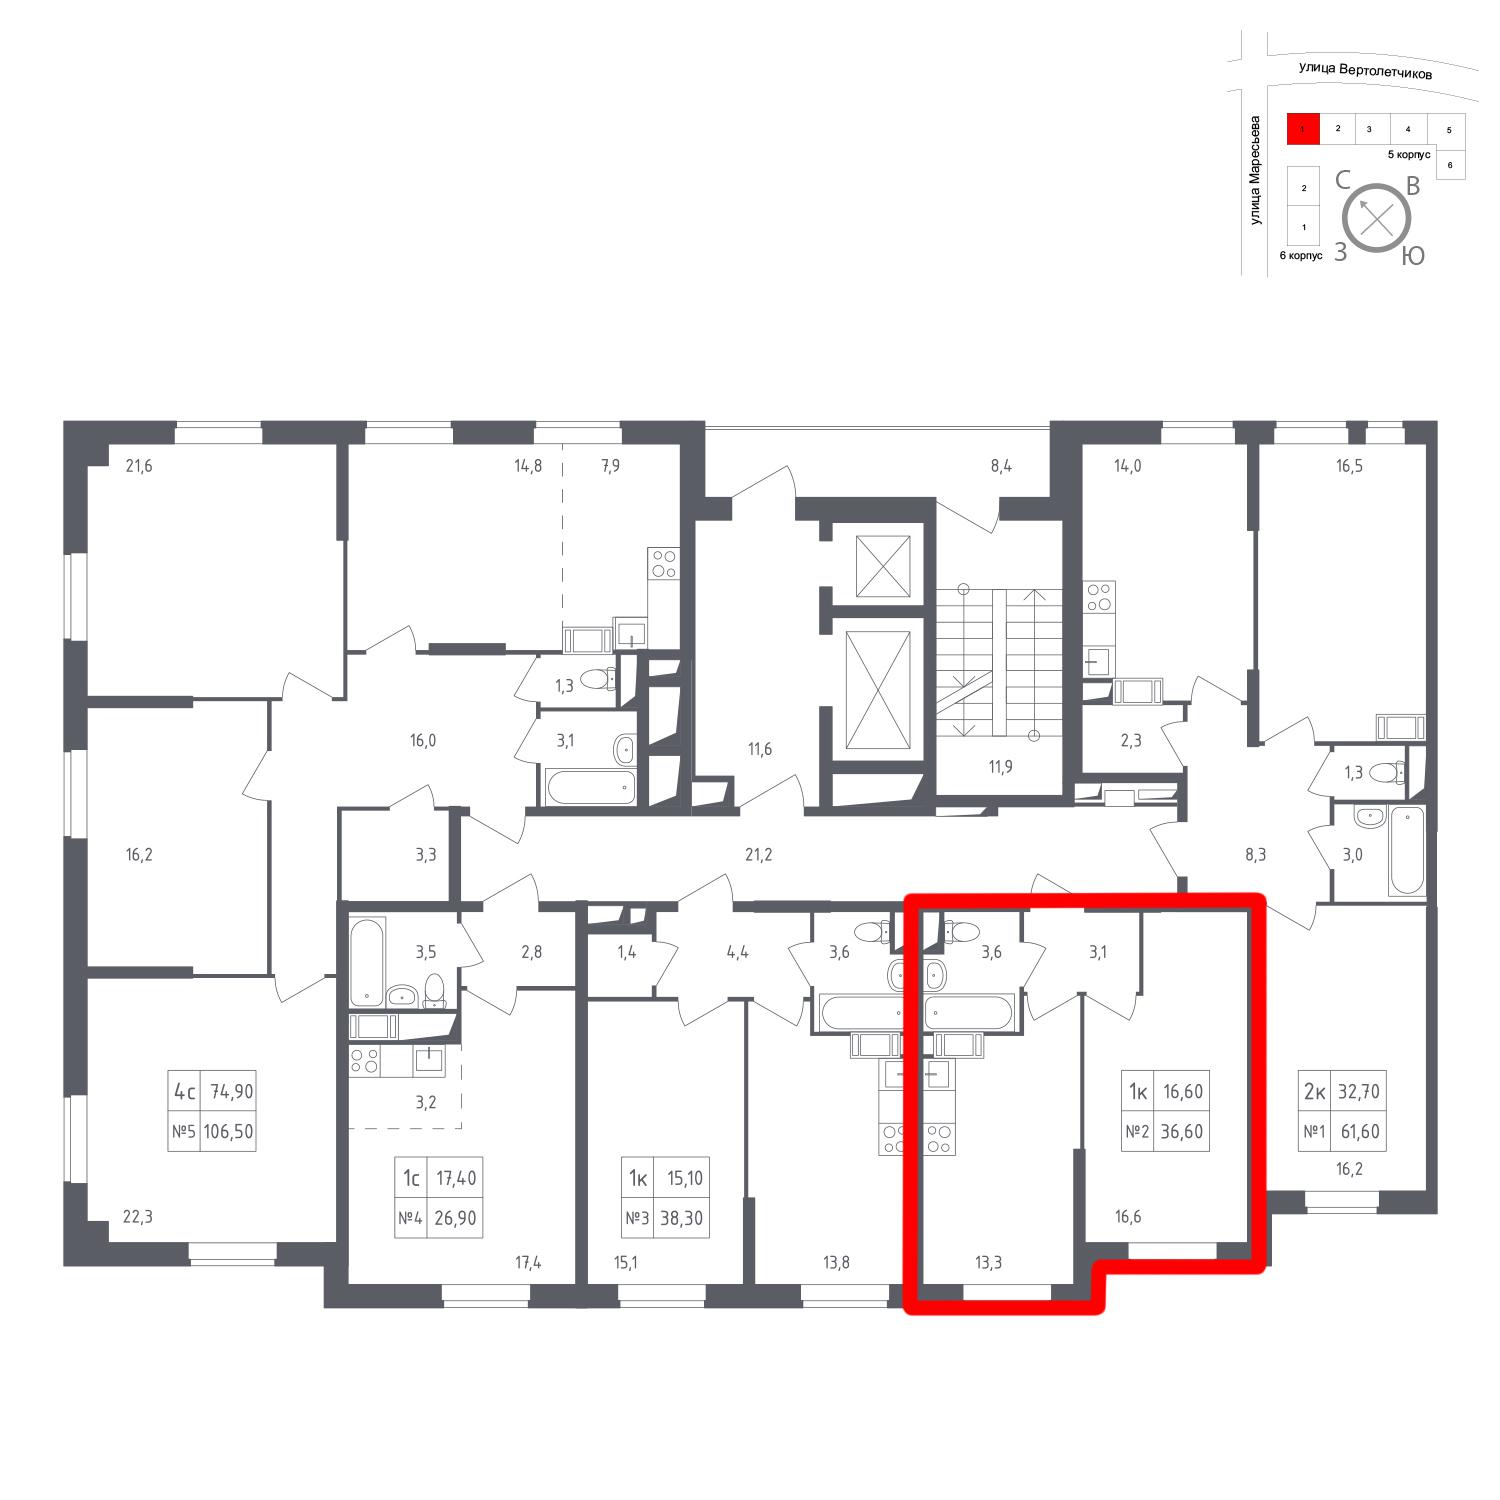 Продаётся 1-комнатная квартира в новостройке 36.6 кв.м. этаж 13/23 за 7 496 778 руб 